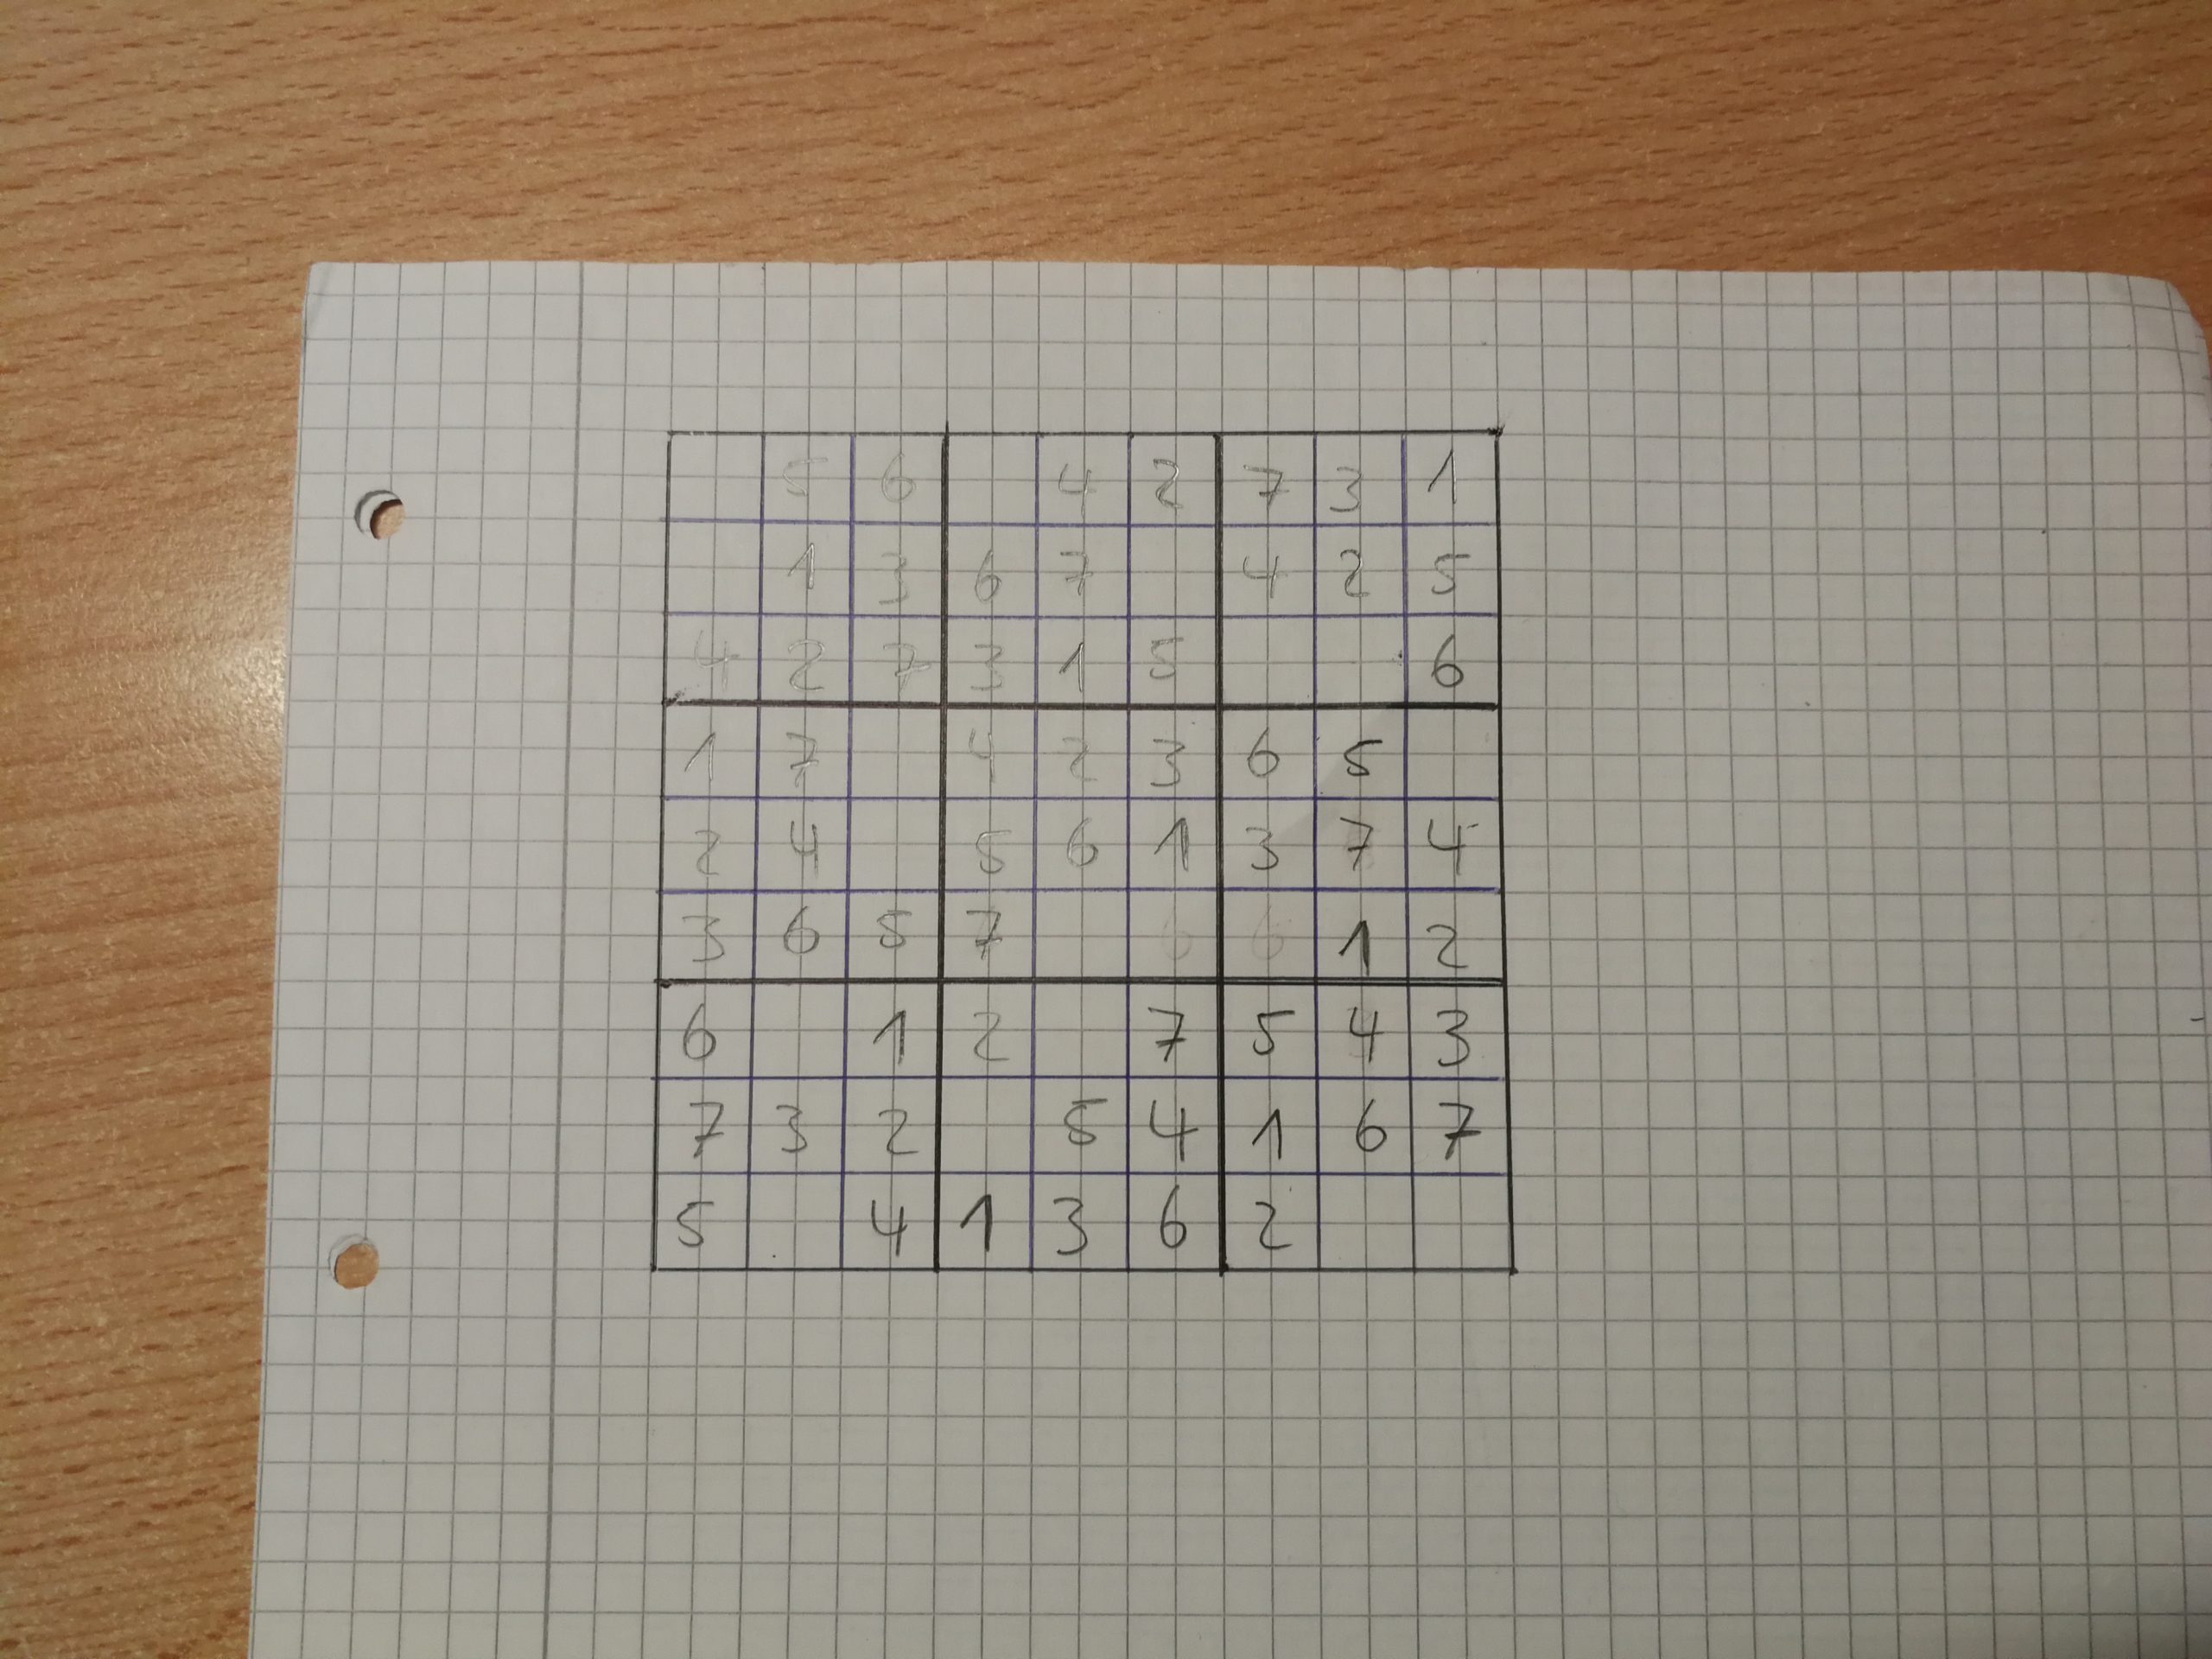 Sudoku Selber Erstellen: Zahlenrätsel Von Hand &amp; Mit Dem Pc ganzes Sudoku Selbst Erstellen